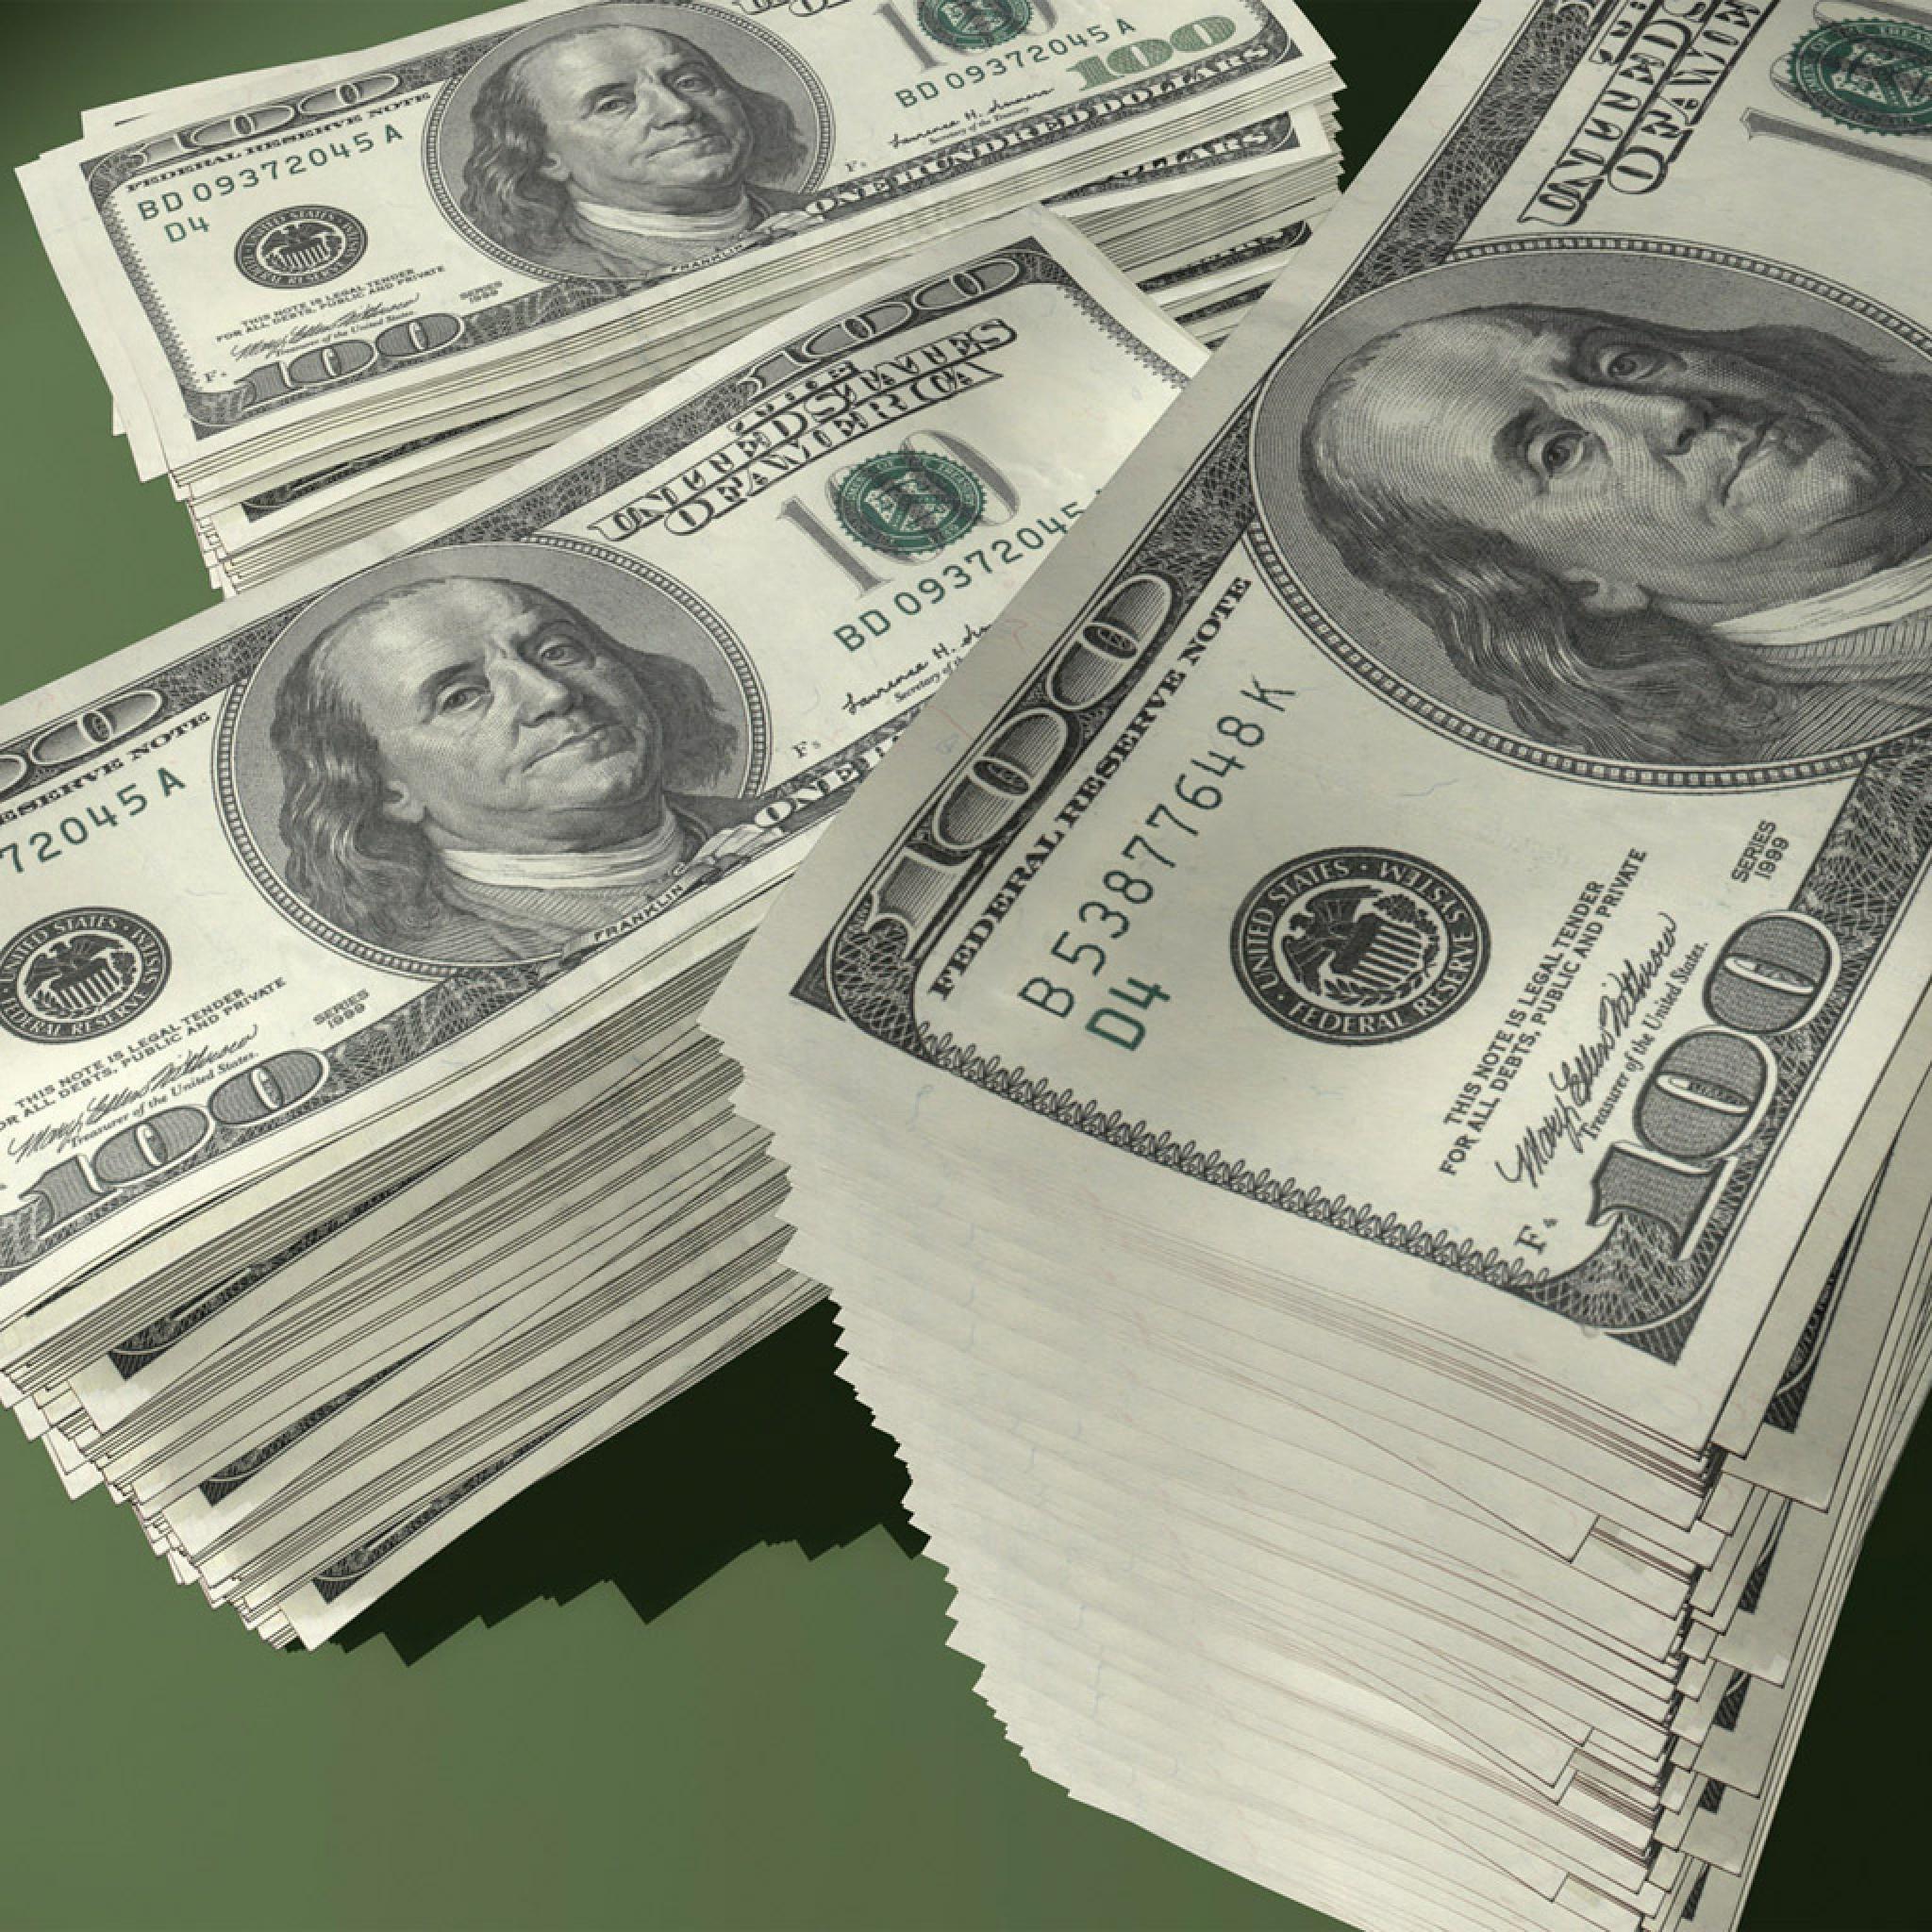 Abstract Retina iPad US 100 Dollar Bill Banknotes Wallpaper